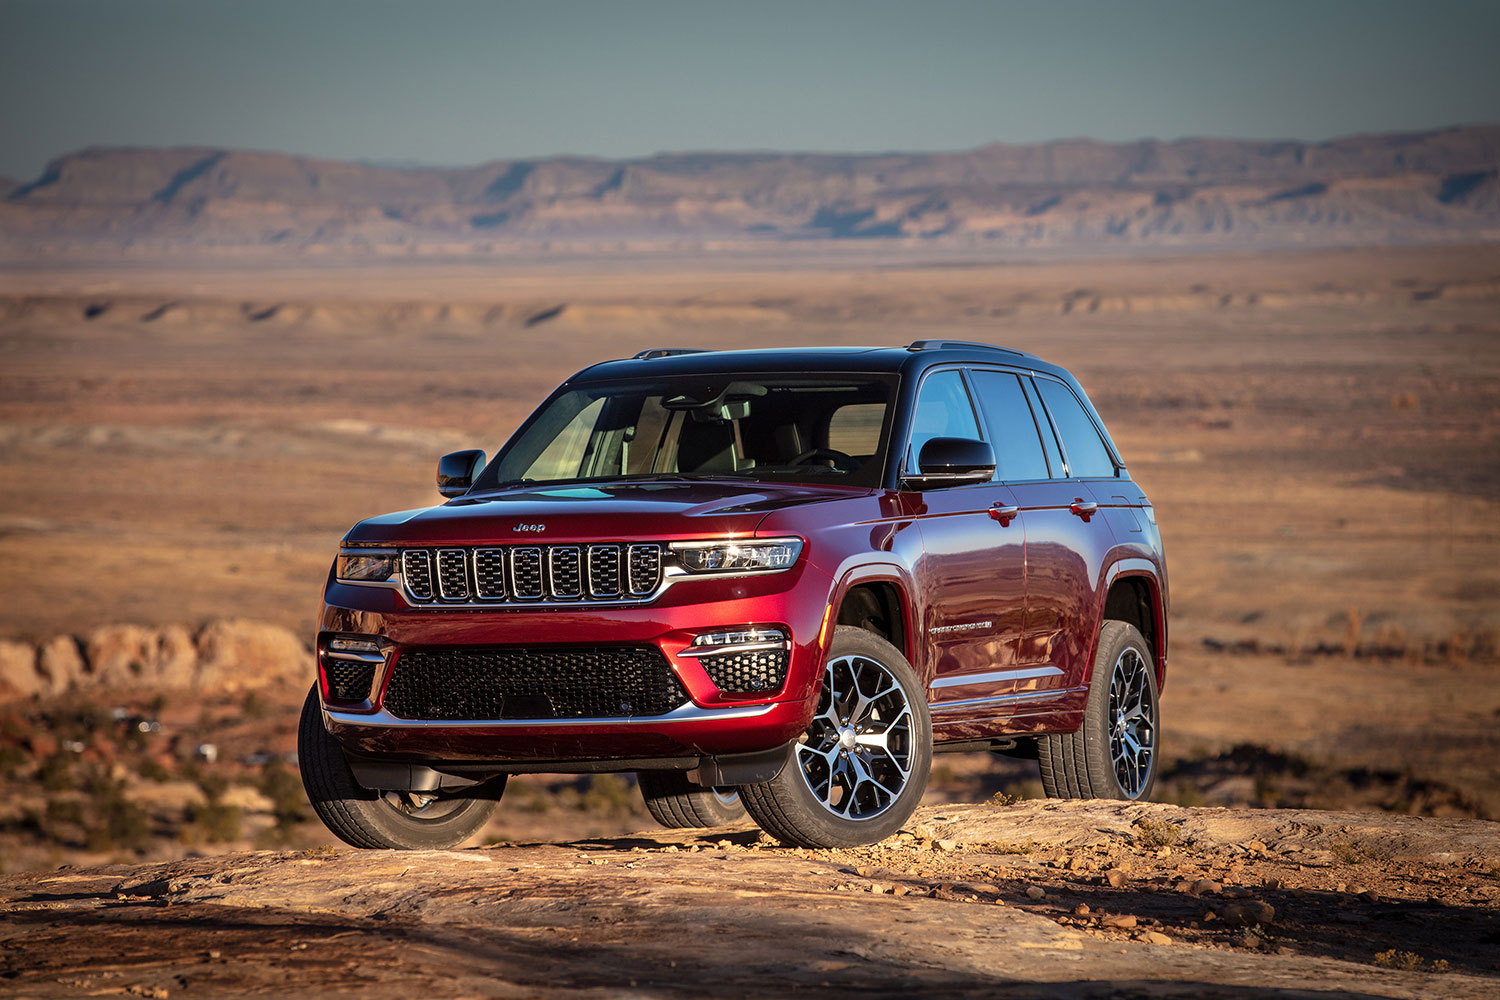 Jeep Grand Cherokee 2022 color rojo en desierto diseño exterior - frente y lateral